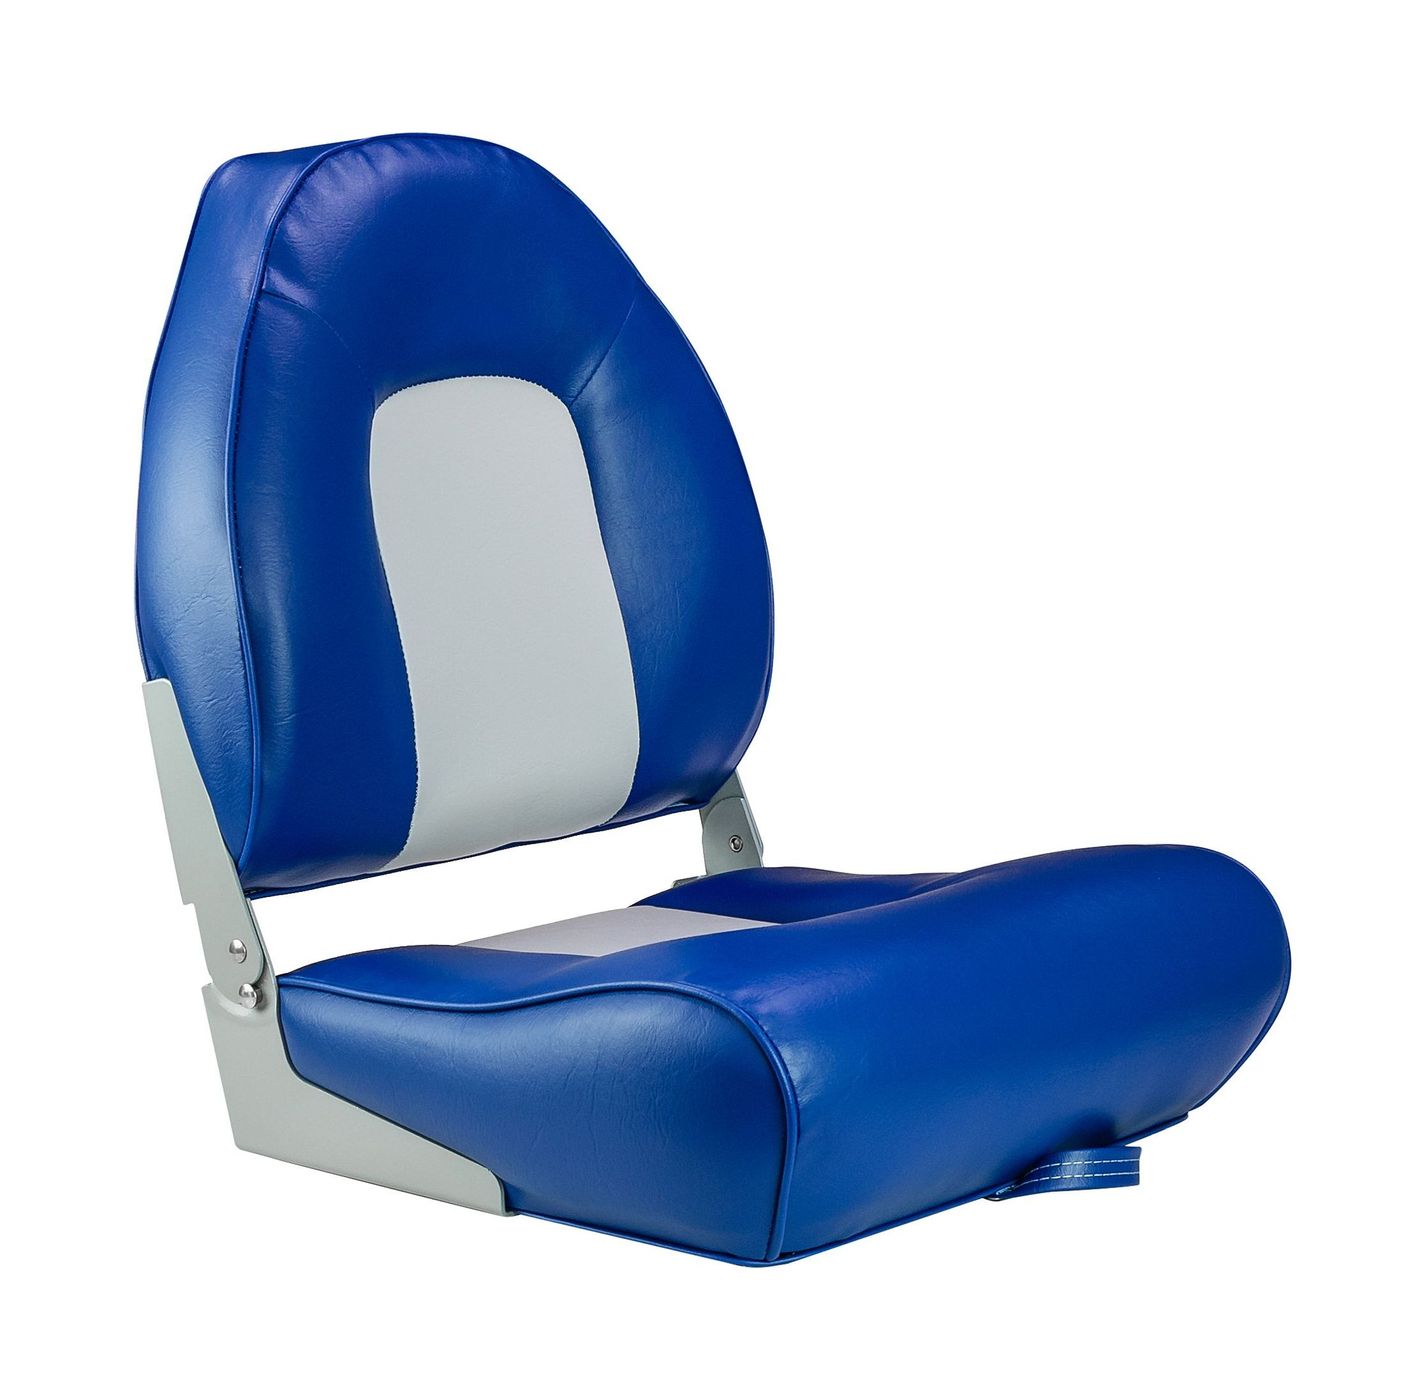 Кресло мягкое складное, обивка винил, цвет синий/серый, Marine Rocket 75116GB-MR кресло мягкое складное обивка винил синий marine rocket 75103b mr